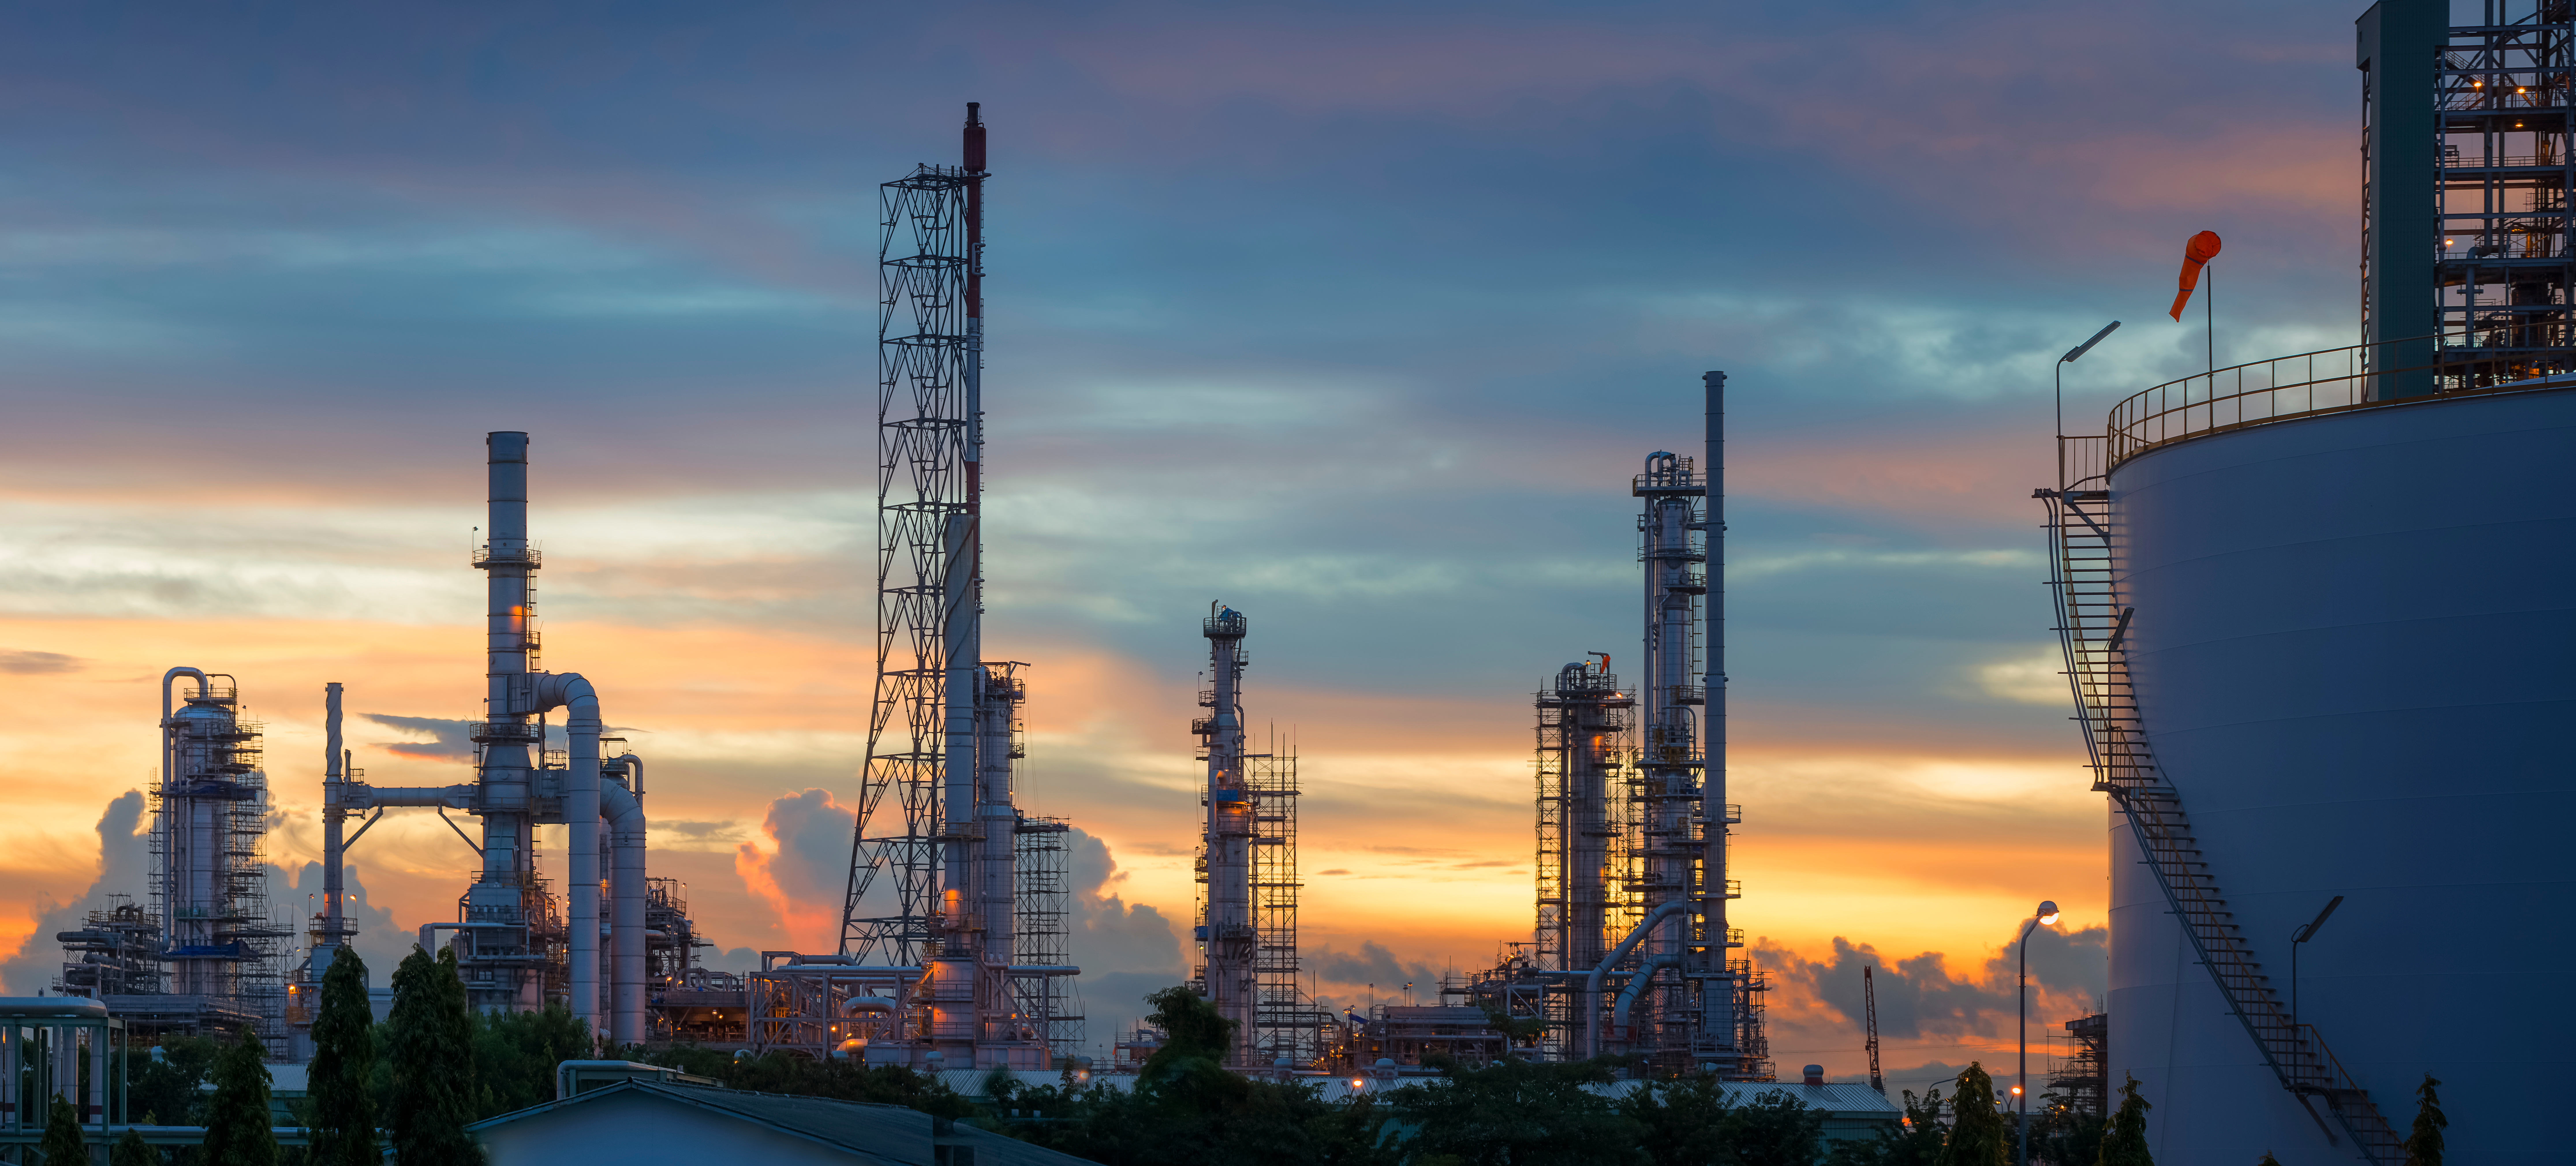 silhouette d'une usine pétrochimique ou d'une raffinerie de pétrole et de gaz au lever du soleil